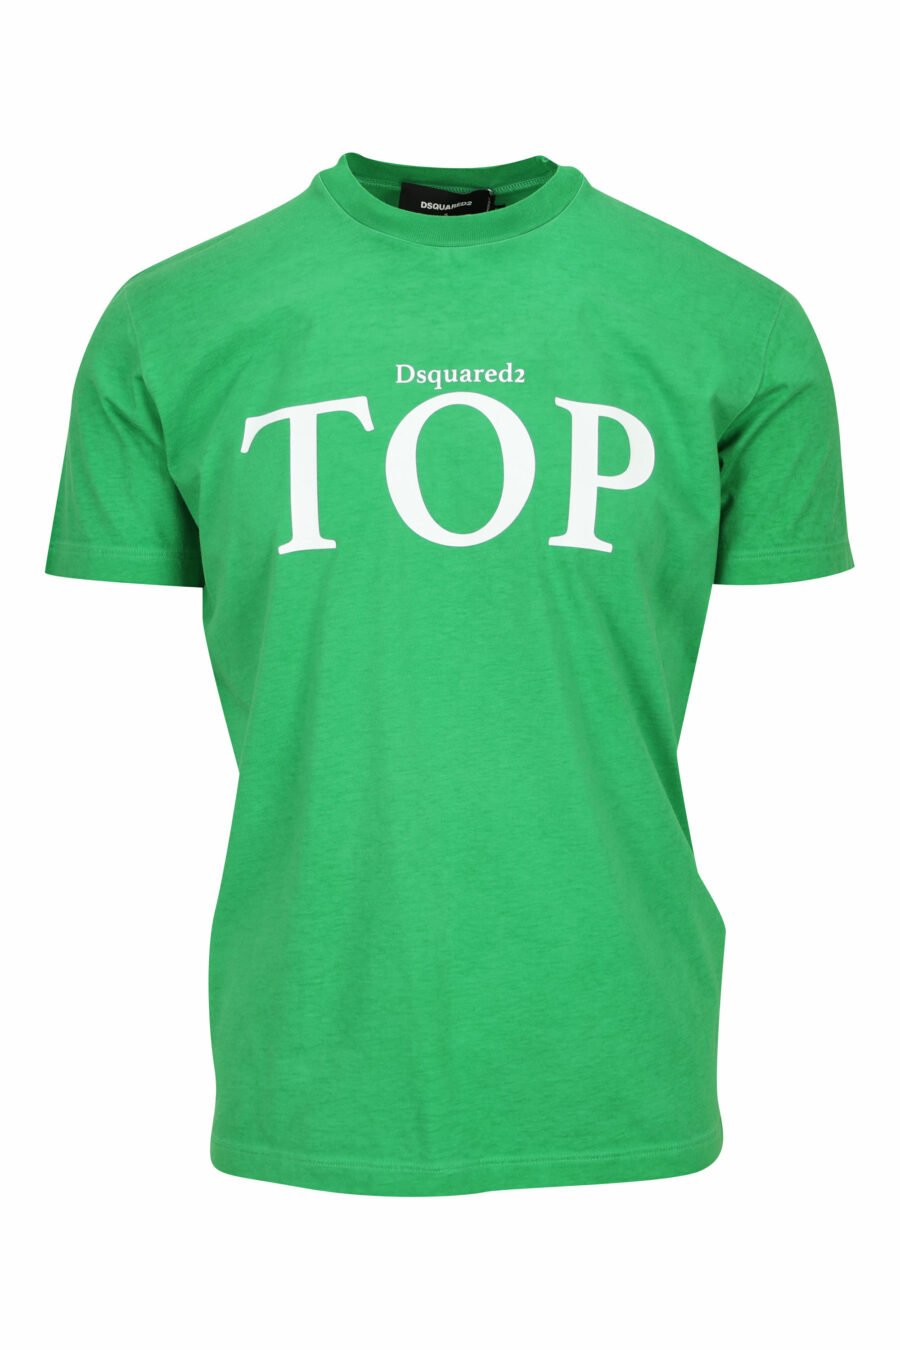 T-shirt verde com maxi top - 8054148449322